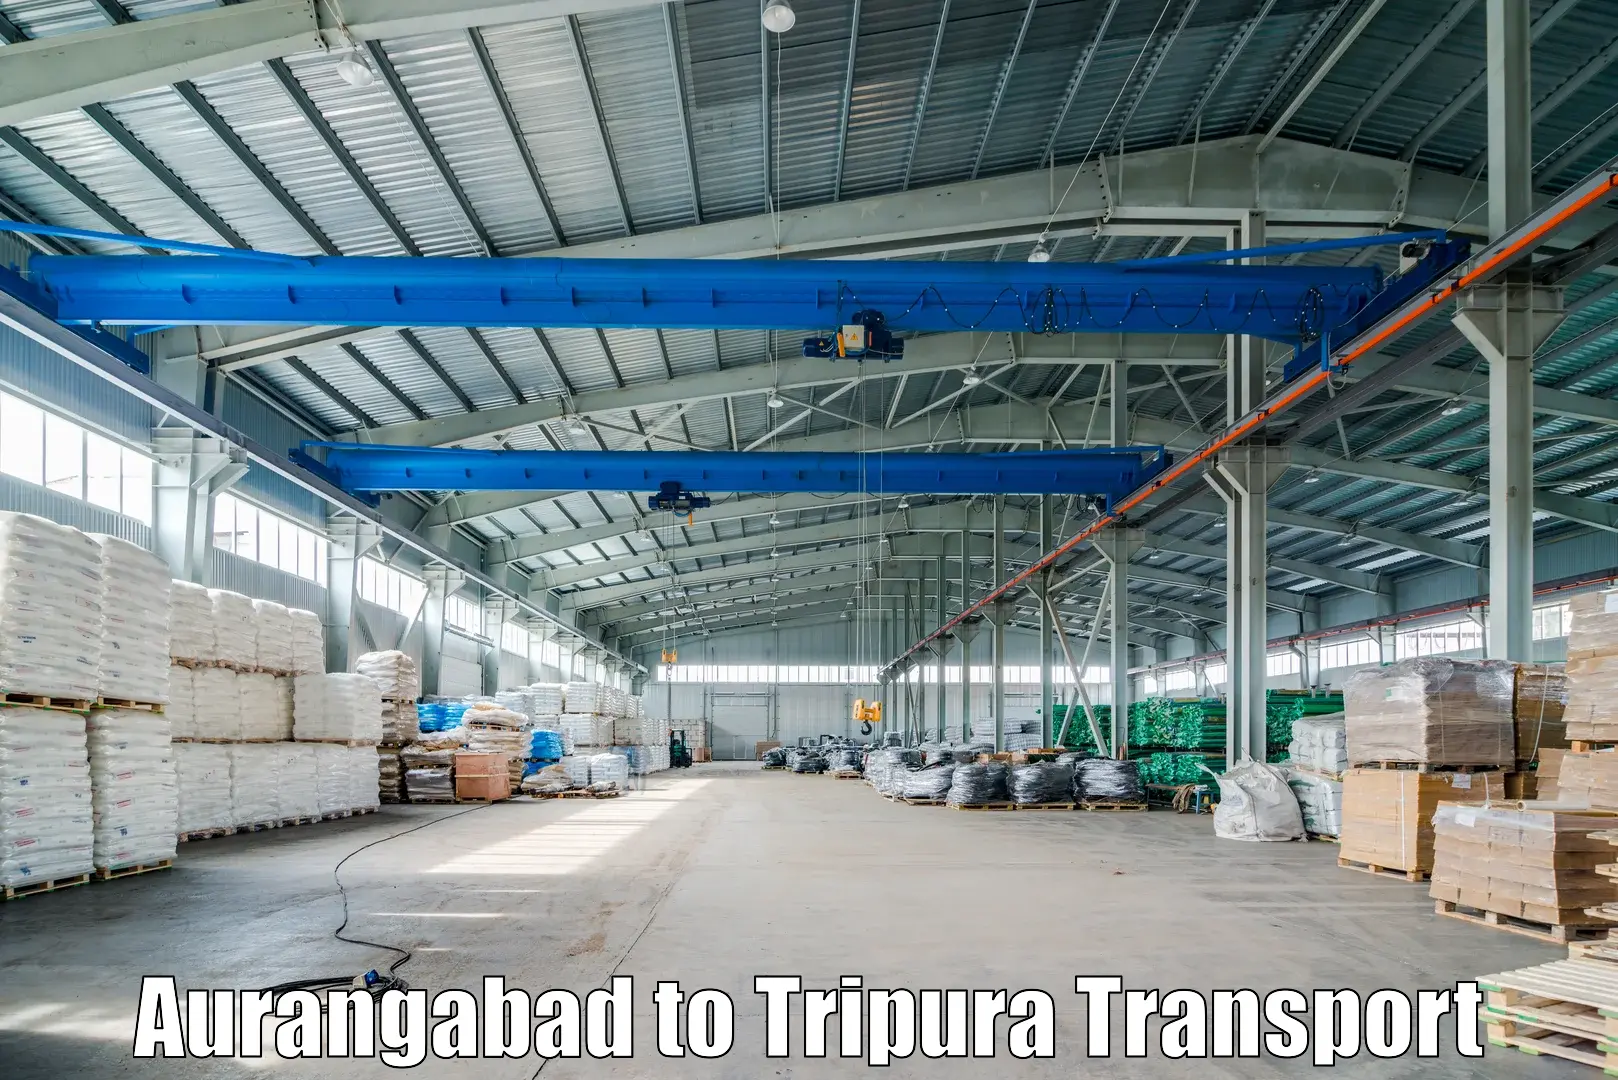 Daily transport service Aurangabad to IIIT Agartala